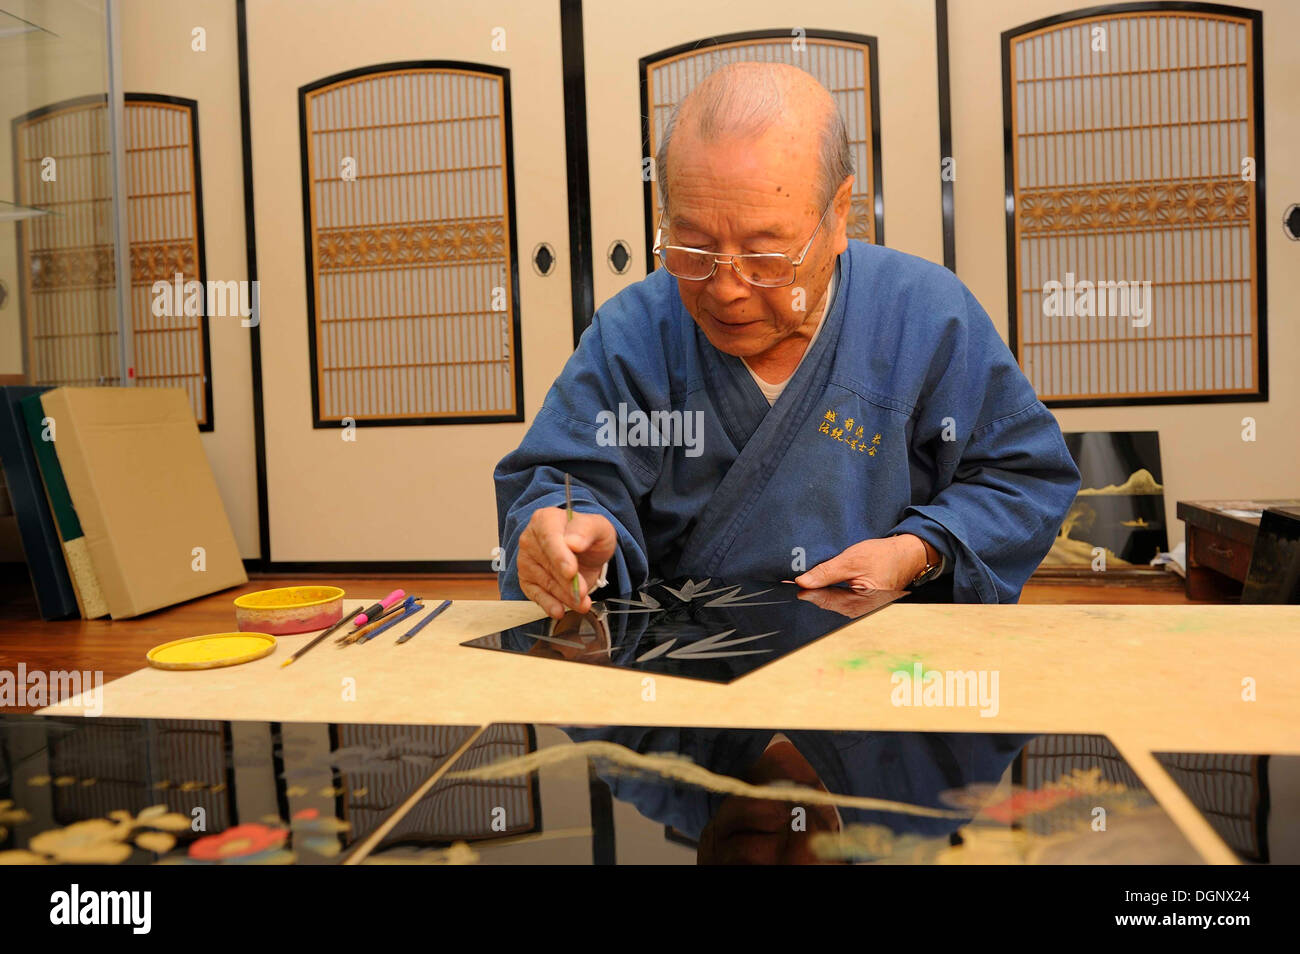 Japanische Handwerker in seiner Werkstatt Schaben ein Bambus-Motiv in den oberen Lack Mantel, Sabae, Fukui, Japan, Südostasien, Asien Stockfoto